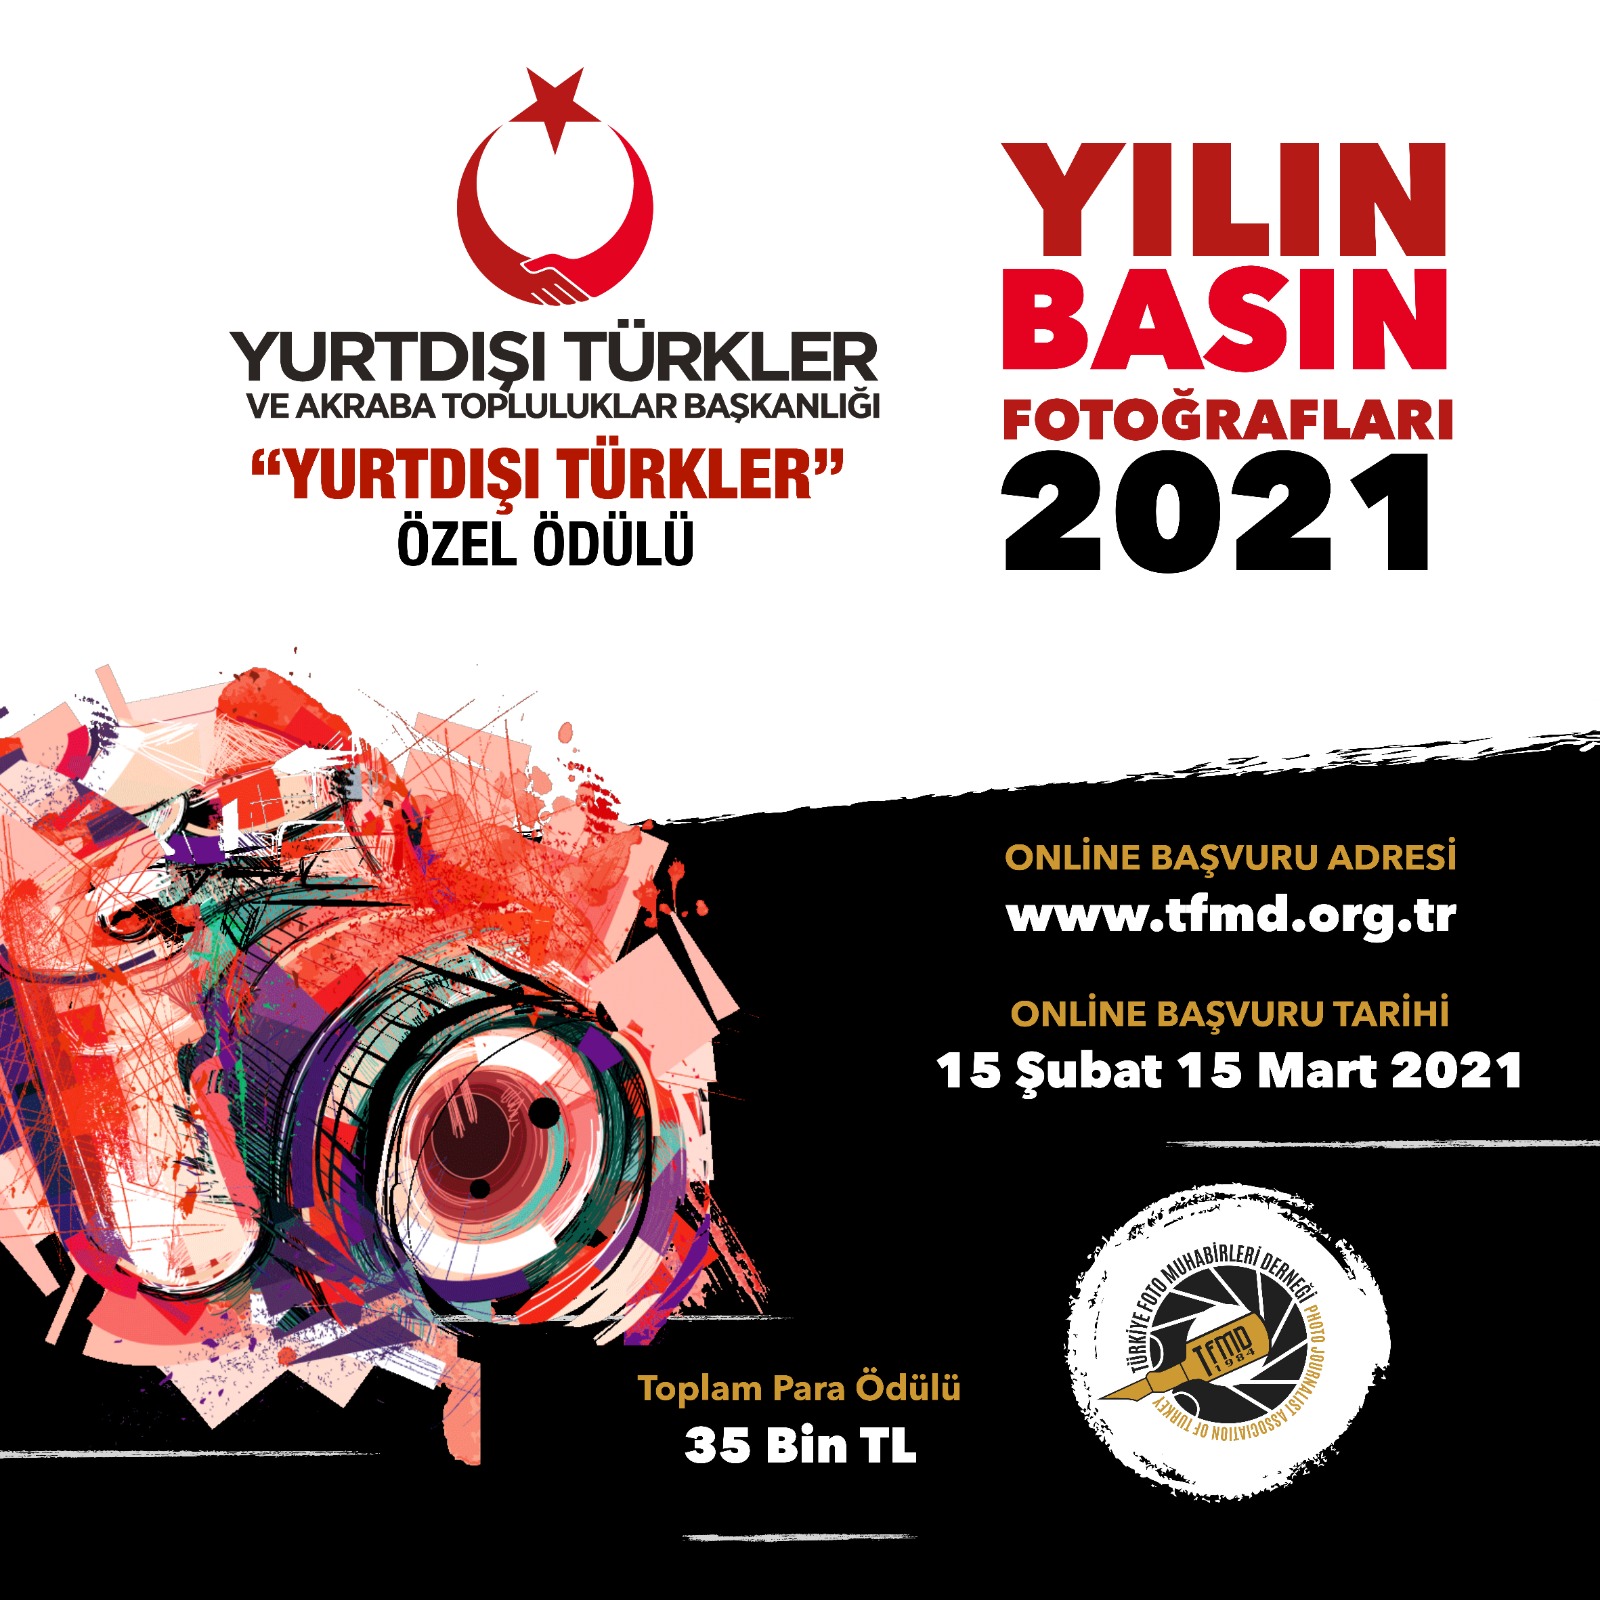 Yılın Basın Fotoğrafları Yarışması’nda “YTB Yurtdışı Türkler Özel Ödülü” verilecek